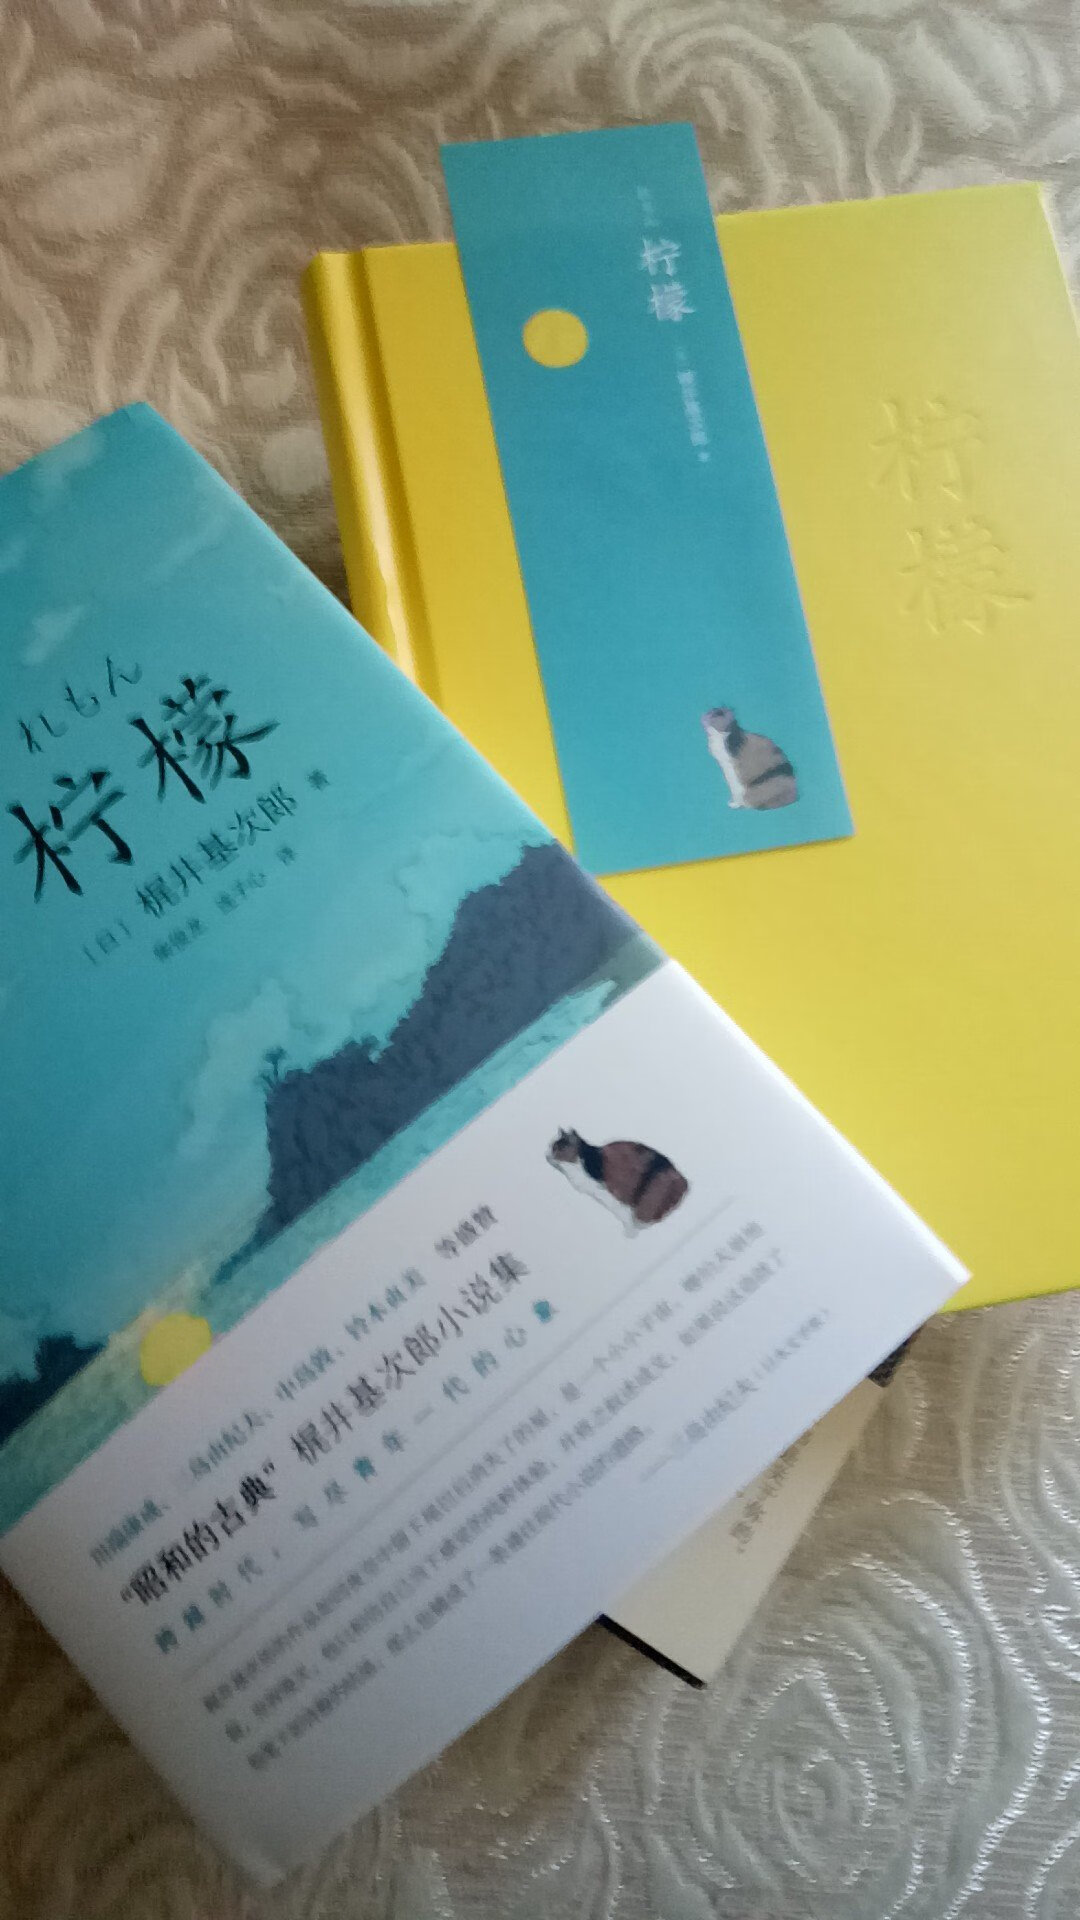 大爱这本日本作家小说集，你看封套，精装本封面以及书签，顷刻之间，柠檬味仿佛弥漫开来，还没来得及阅读，就爱不释手了。。。